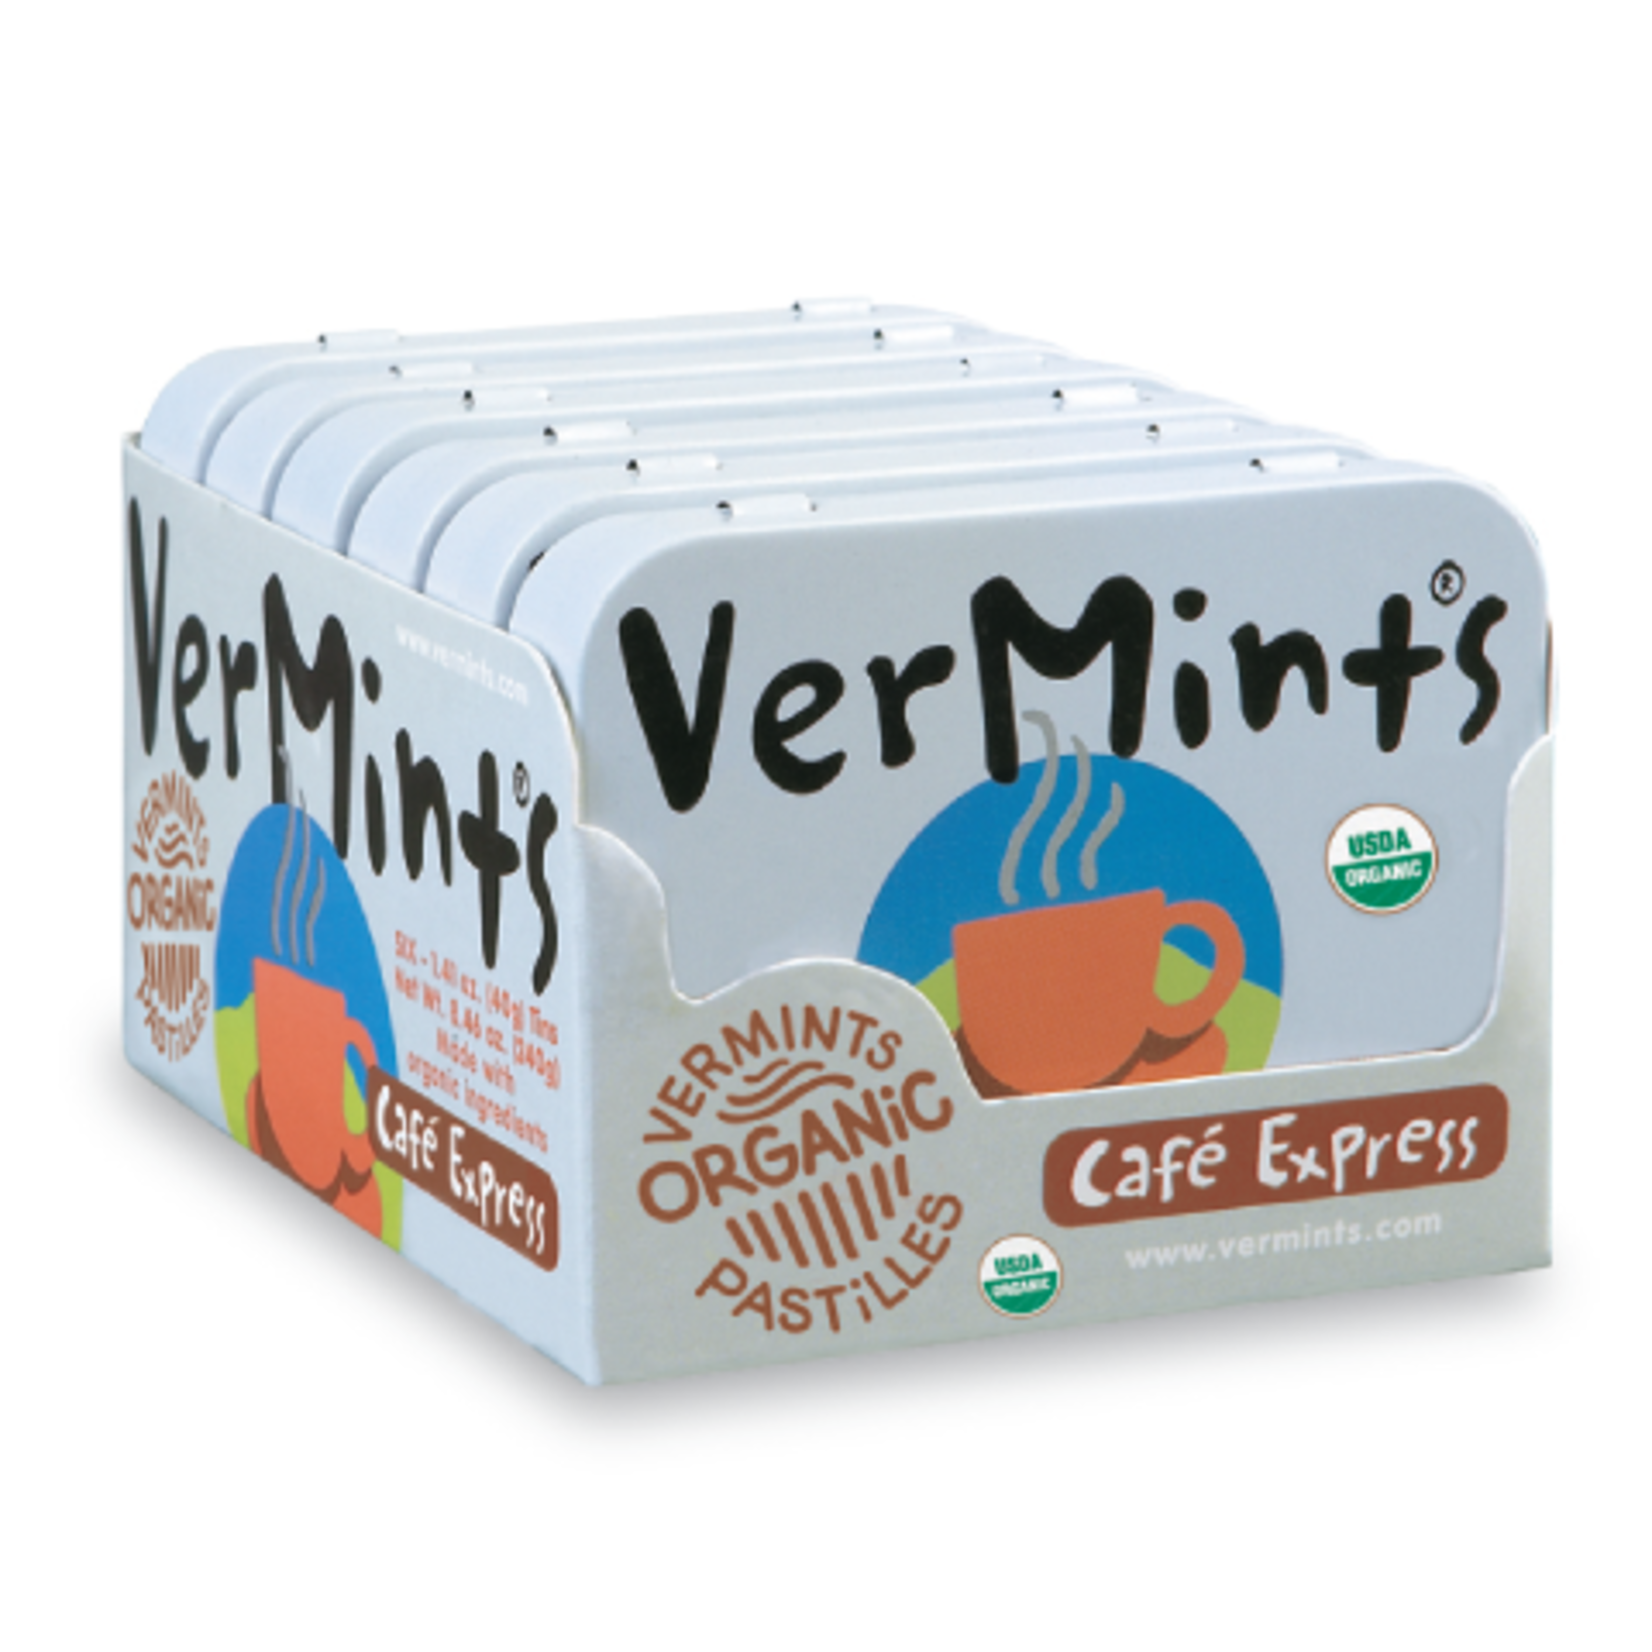 VERMINTS VERMINTS ORGANIC MINTS CAFE EXPRESS 40G